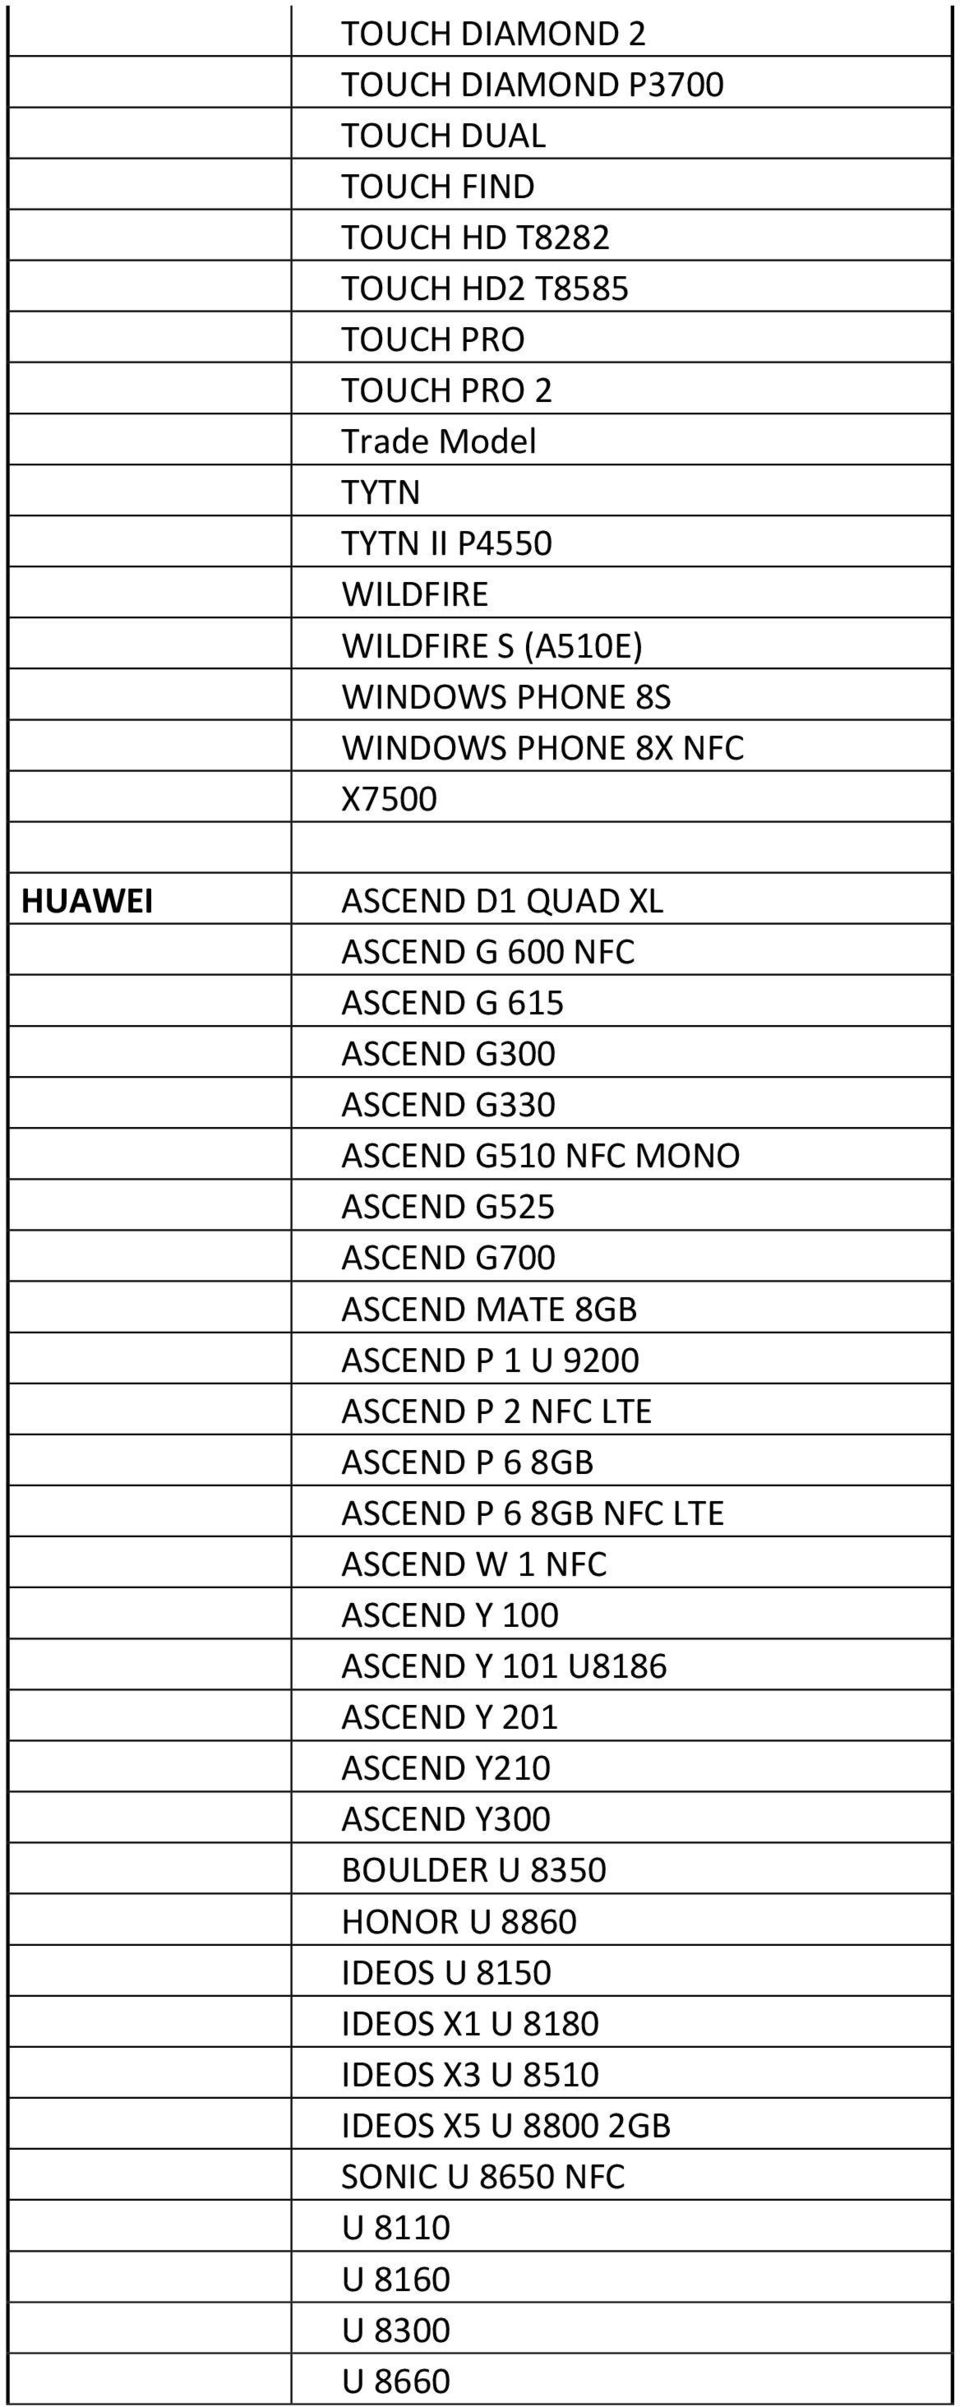 G525 ASCEND G700 ASCEND MATE 8GB ASCEND P 1 U 9200 ASCEND P 2 NFC LTE ASCEND P 6 8GB ASCEND P 6 8GB NFC LTE ASCEND W 1 NFC ASCEND Y 100 ASCEND Y 101 U8186 ASCEND